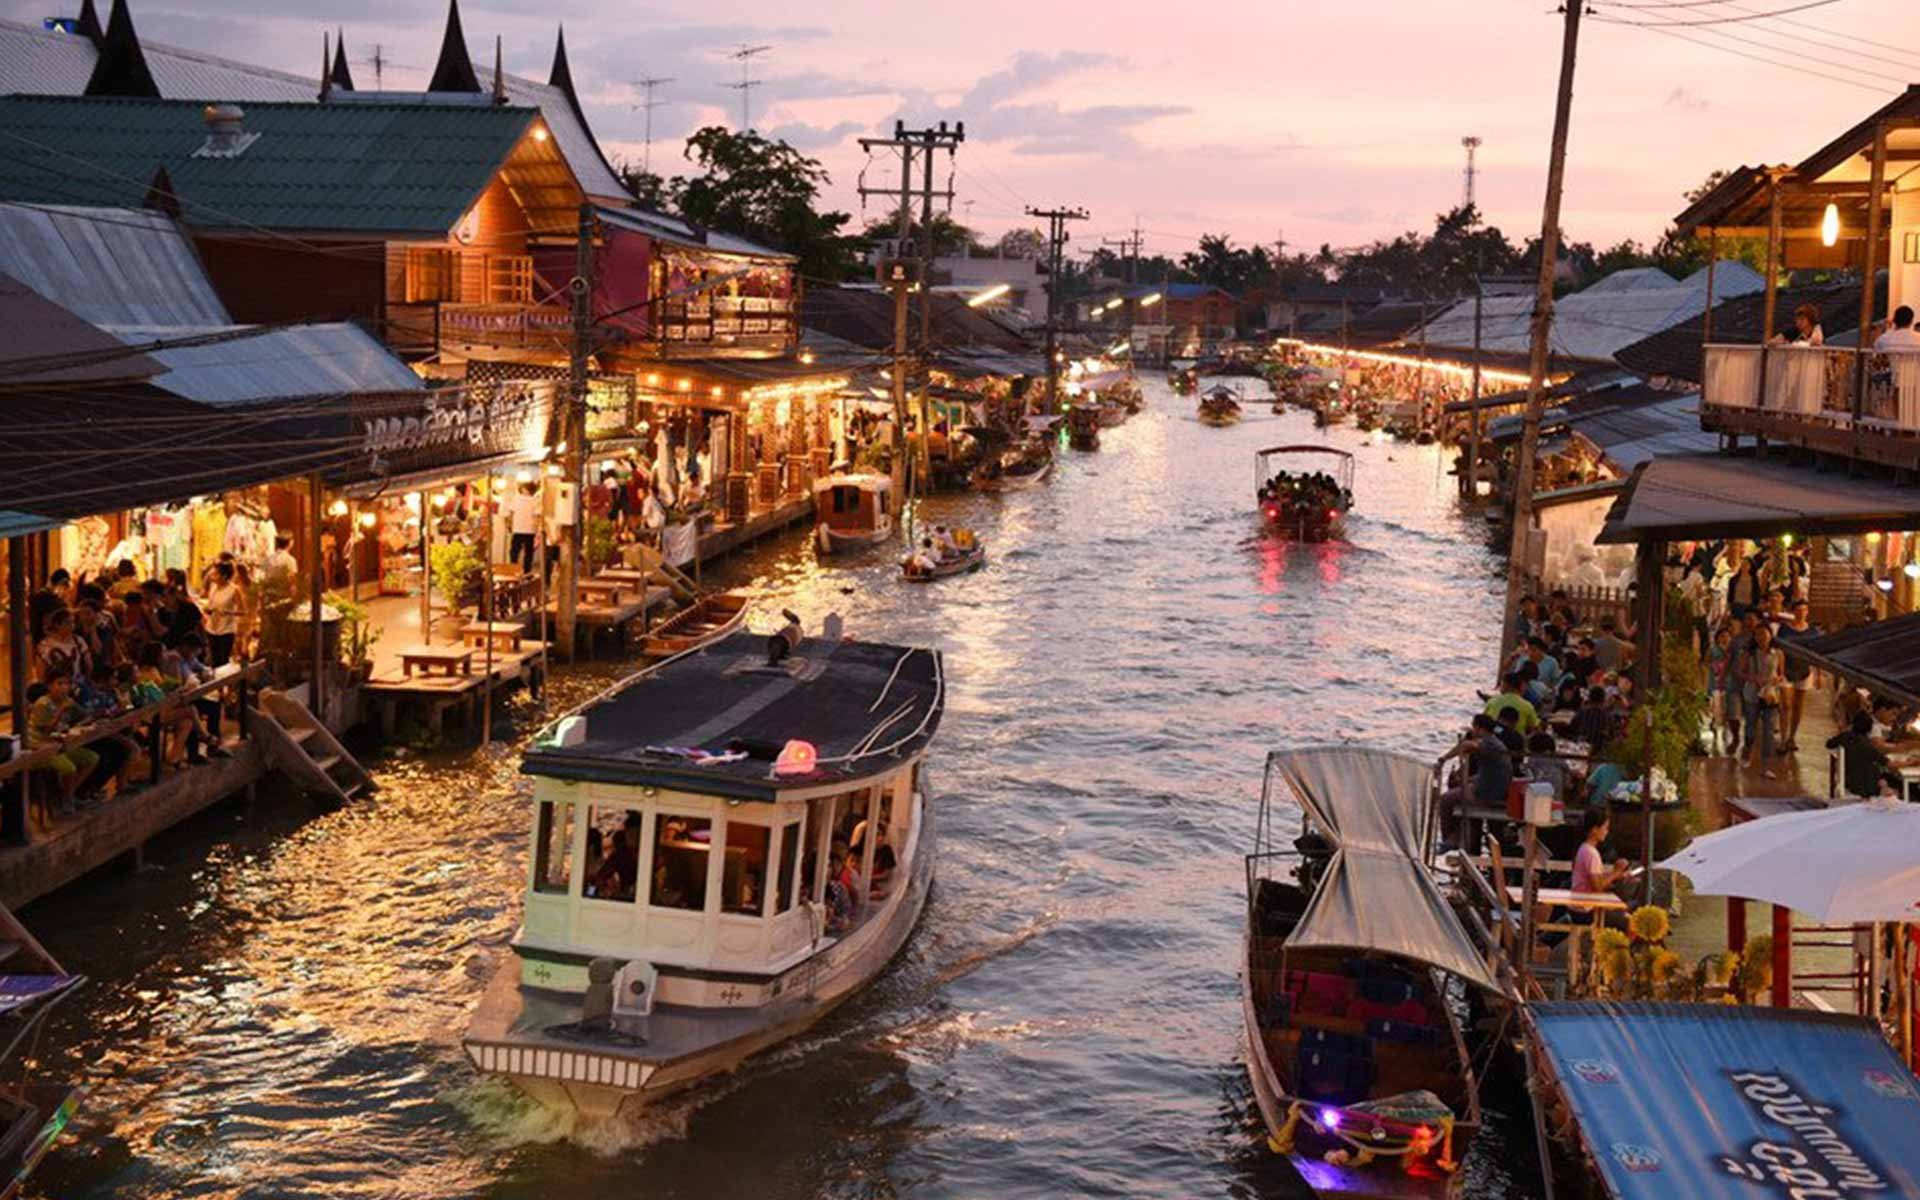 Chiang Rai - Unique check-in destination in Thailand